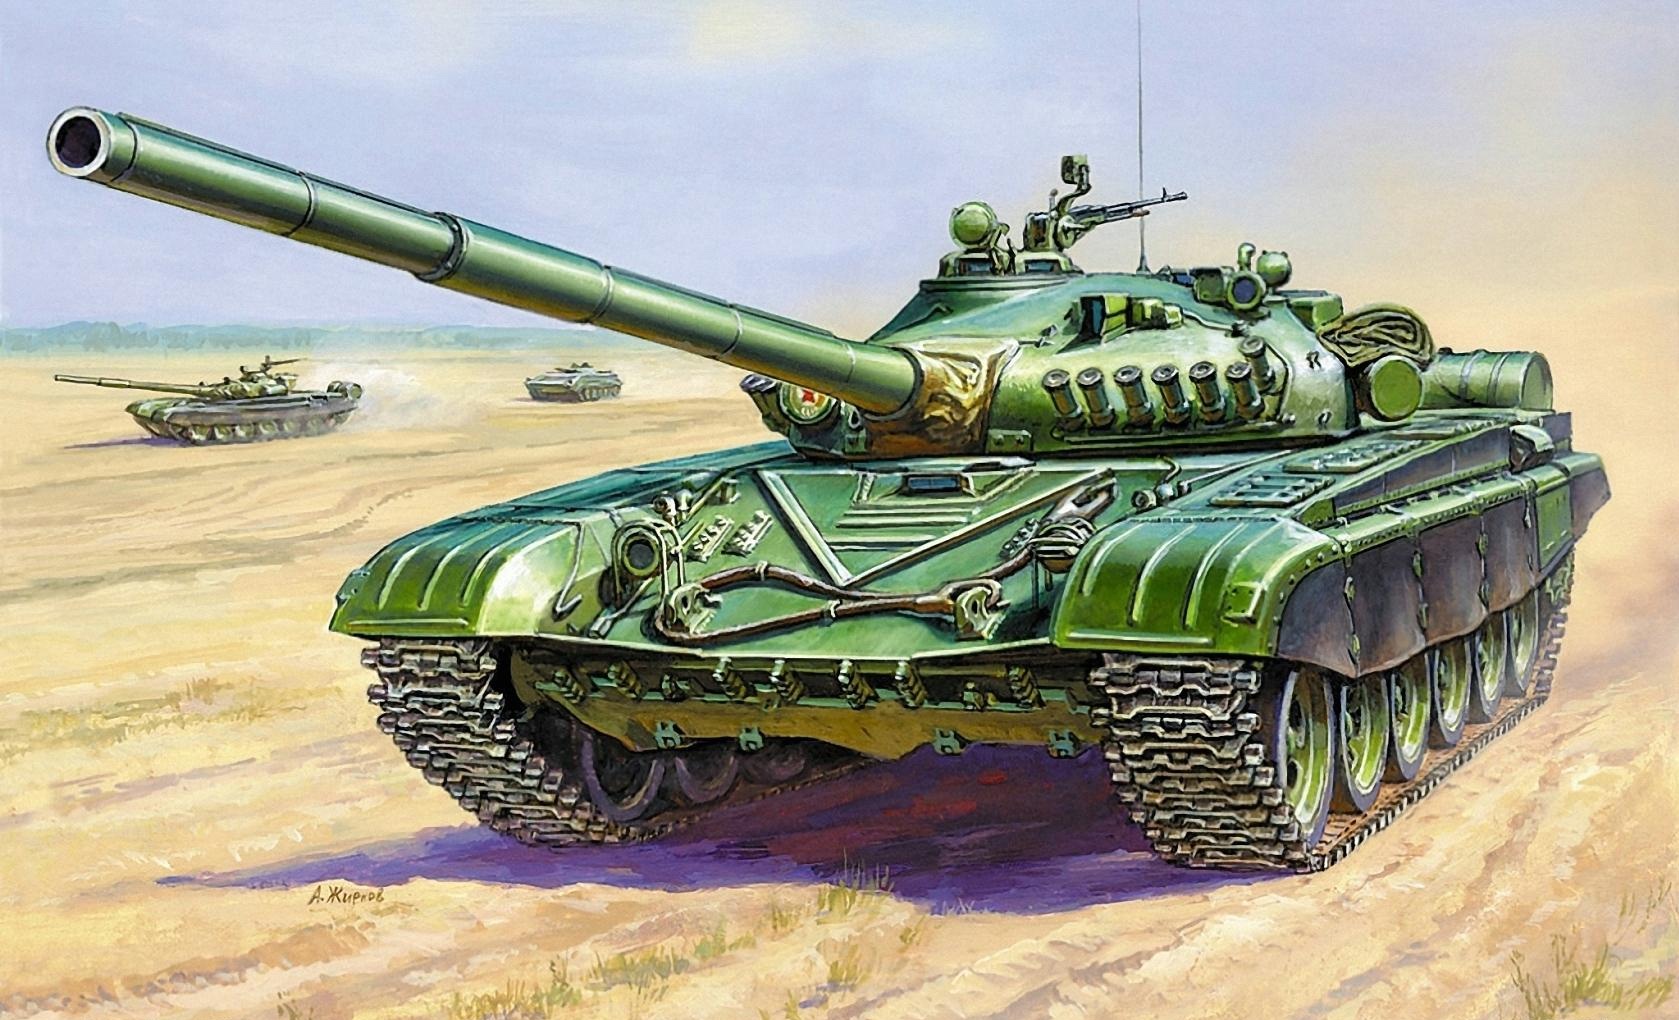 Обои для рабочего стола Армия Танки T-72A Рисованные Т-72 военные танк